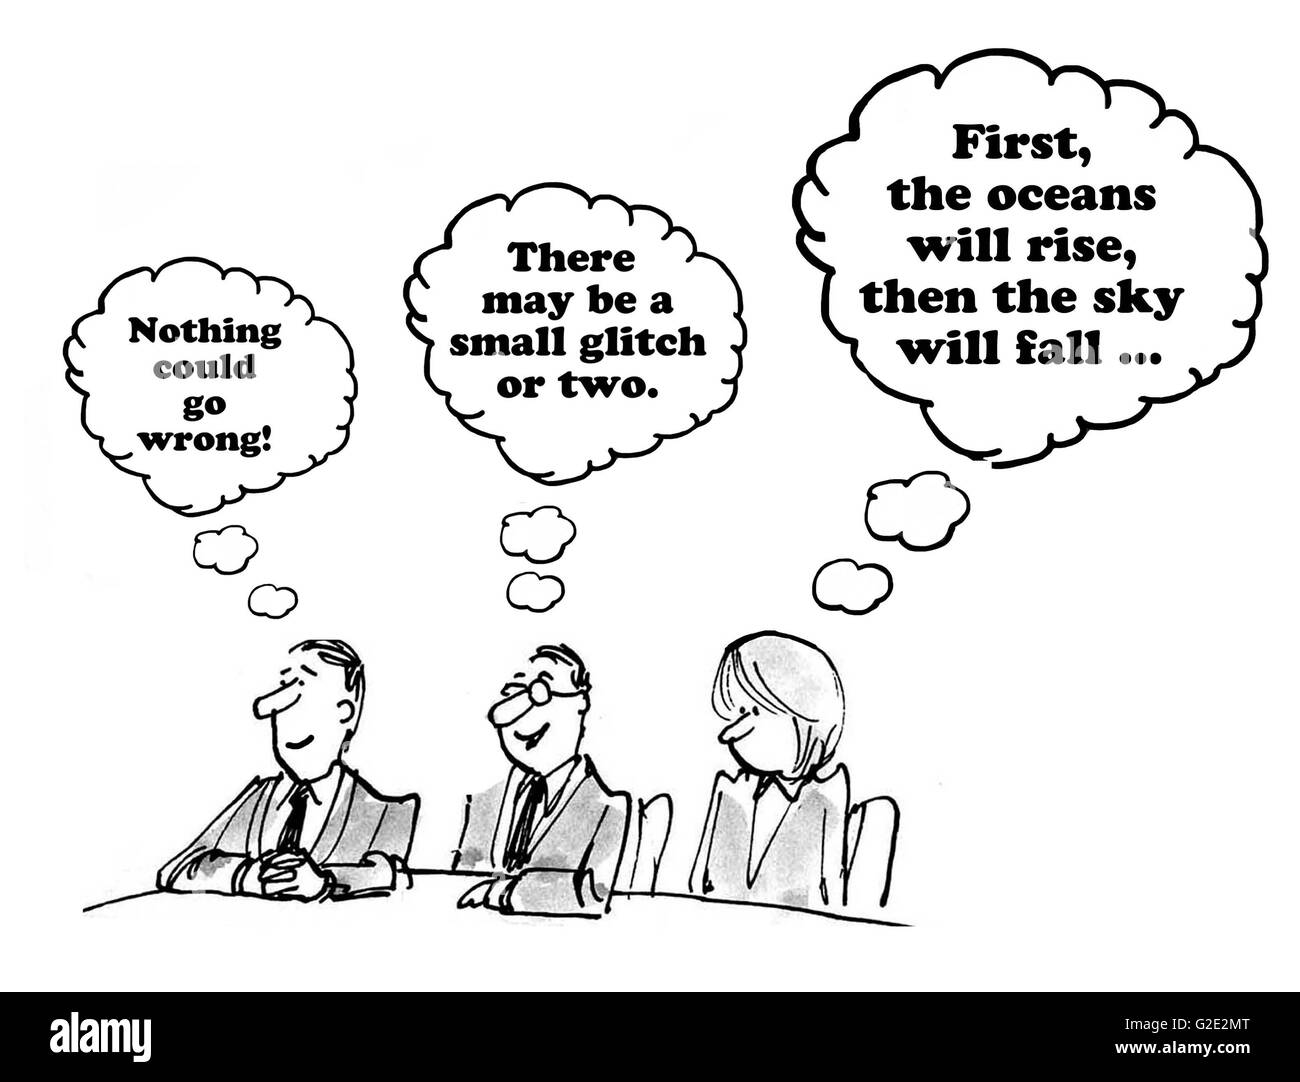 Geschäftliche Cartoon über unterschiedliche Reaktionen auf eine Empfehlung. Stockfoto